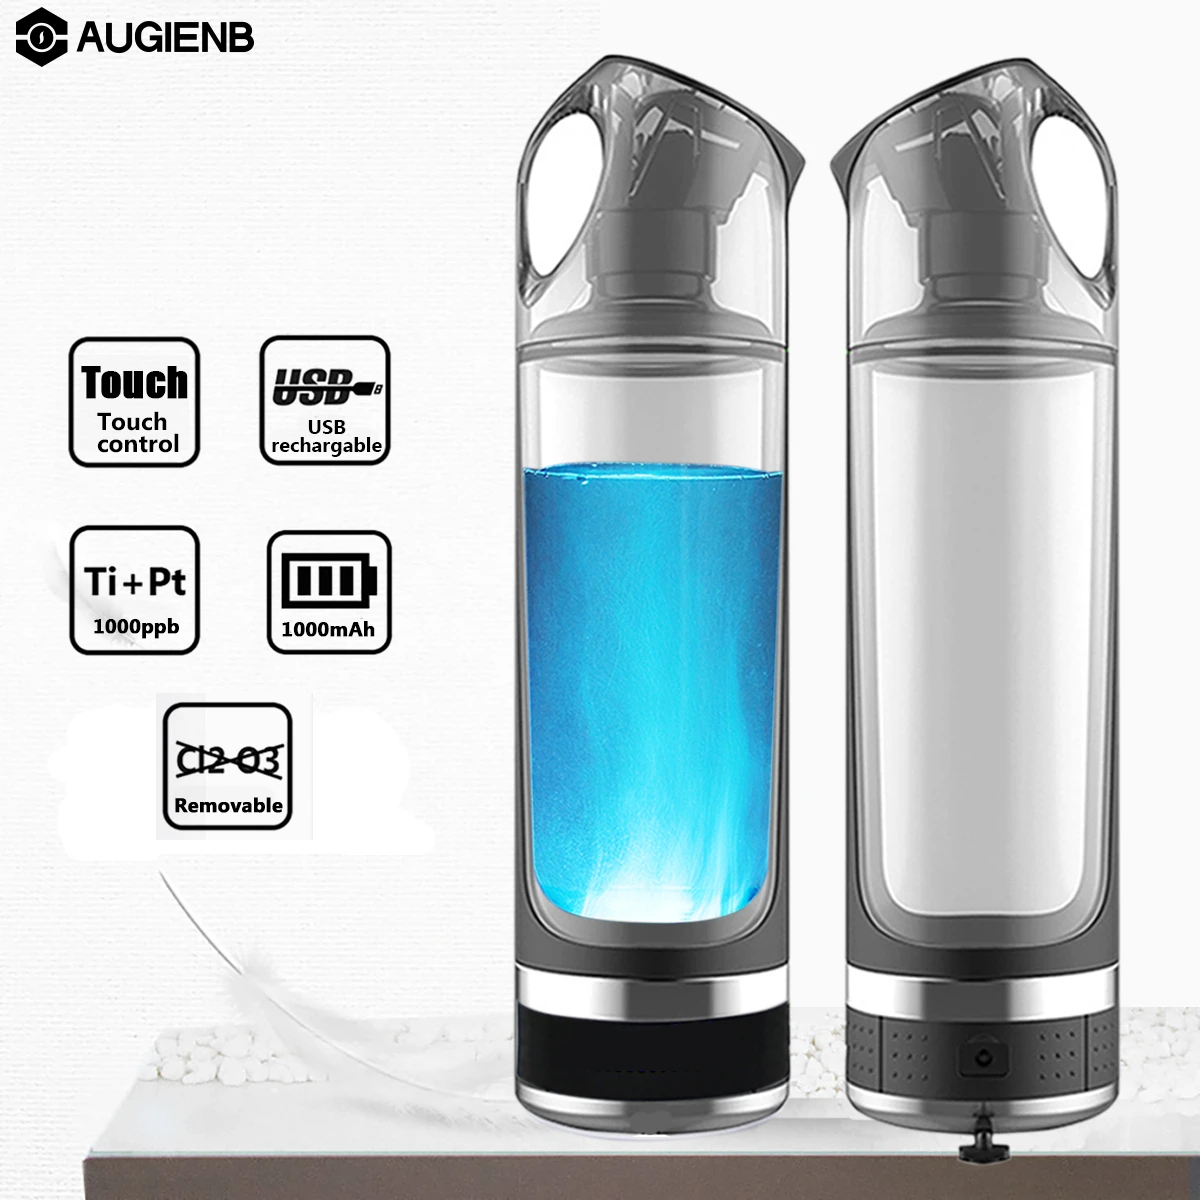 Augienb Healthy Anti-Aging Hydrogen Rich Water Bottle Generator 500ML LED Display Hydrogen Rich Wate